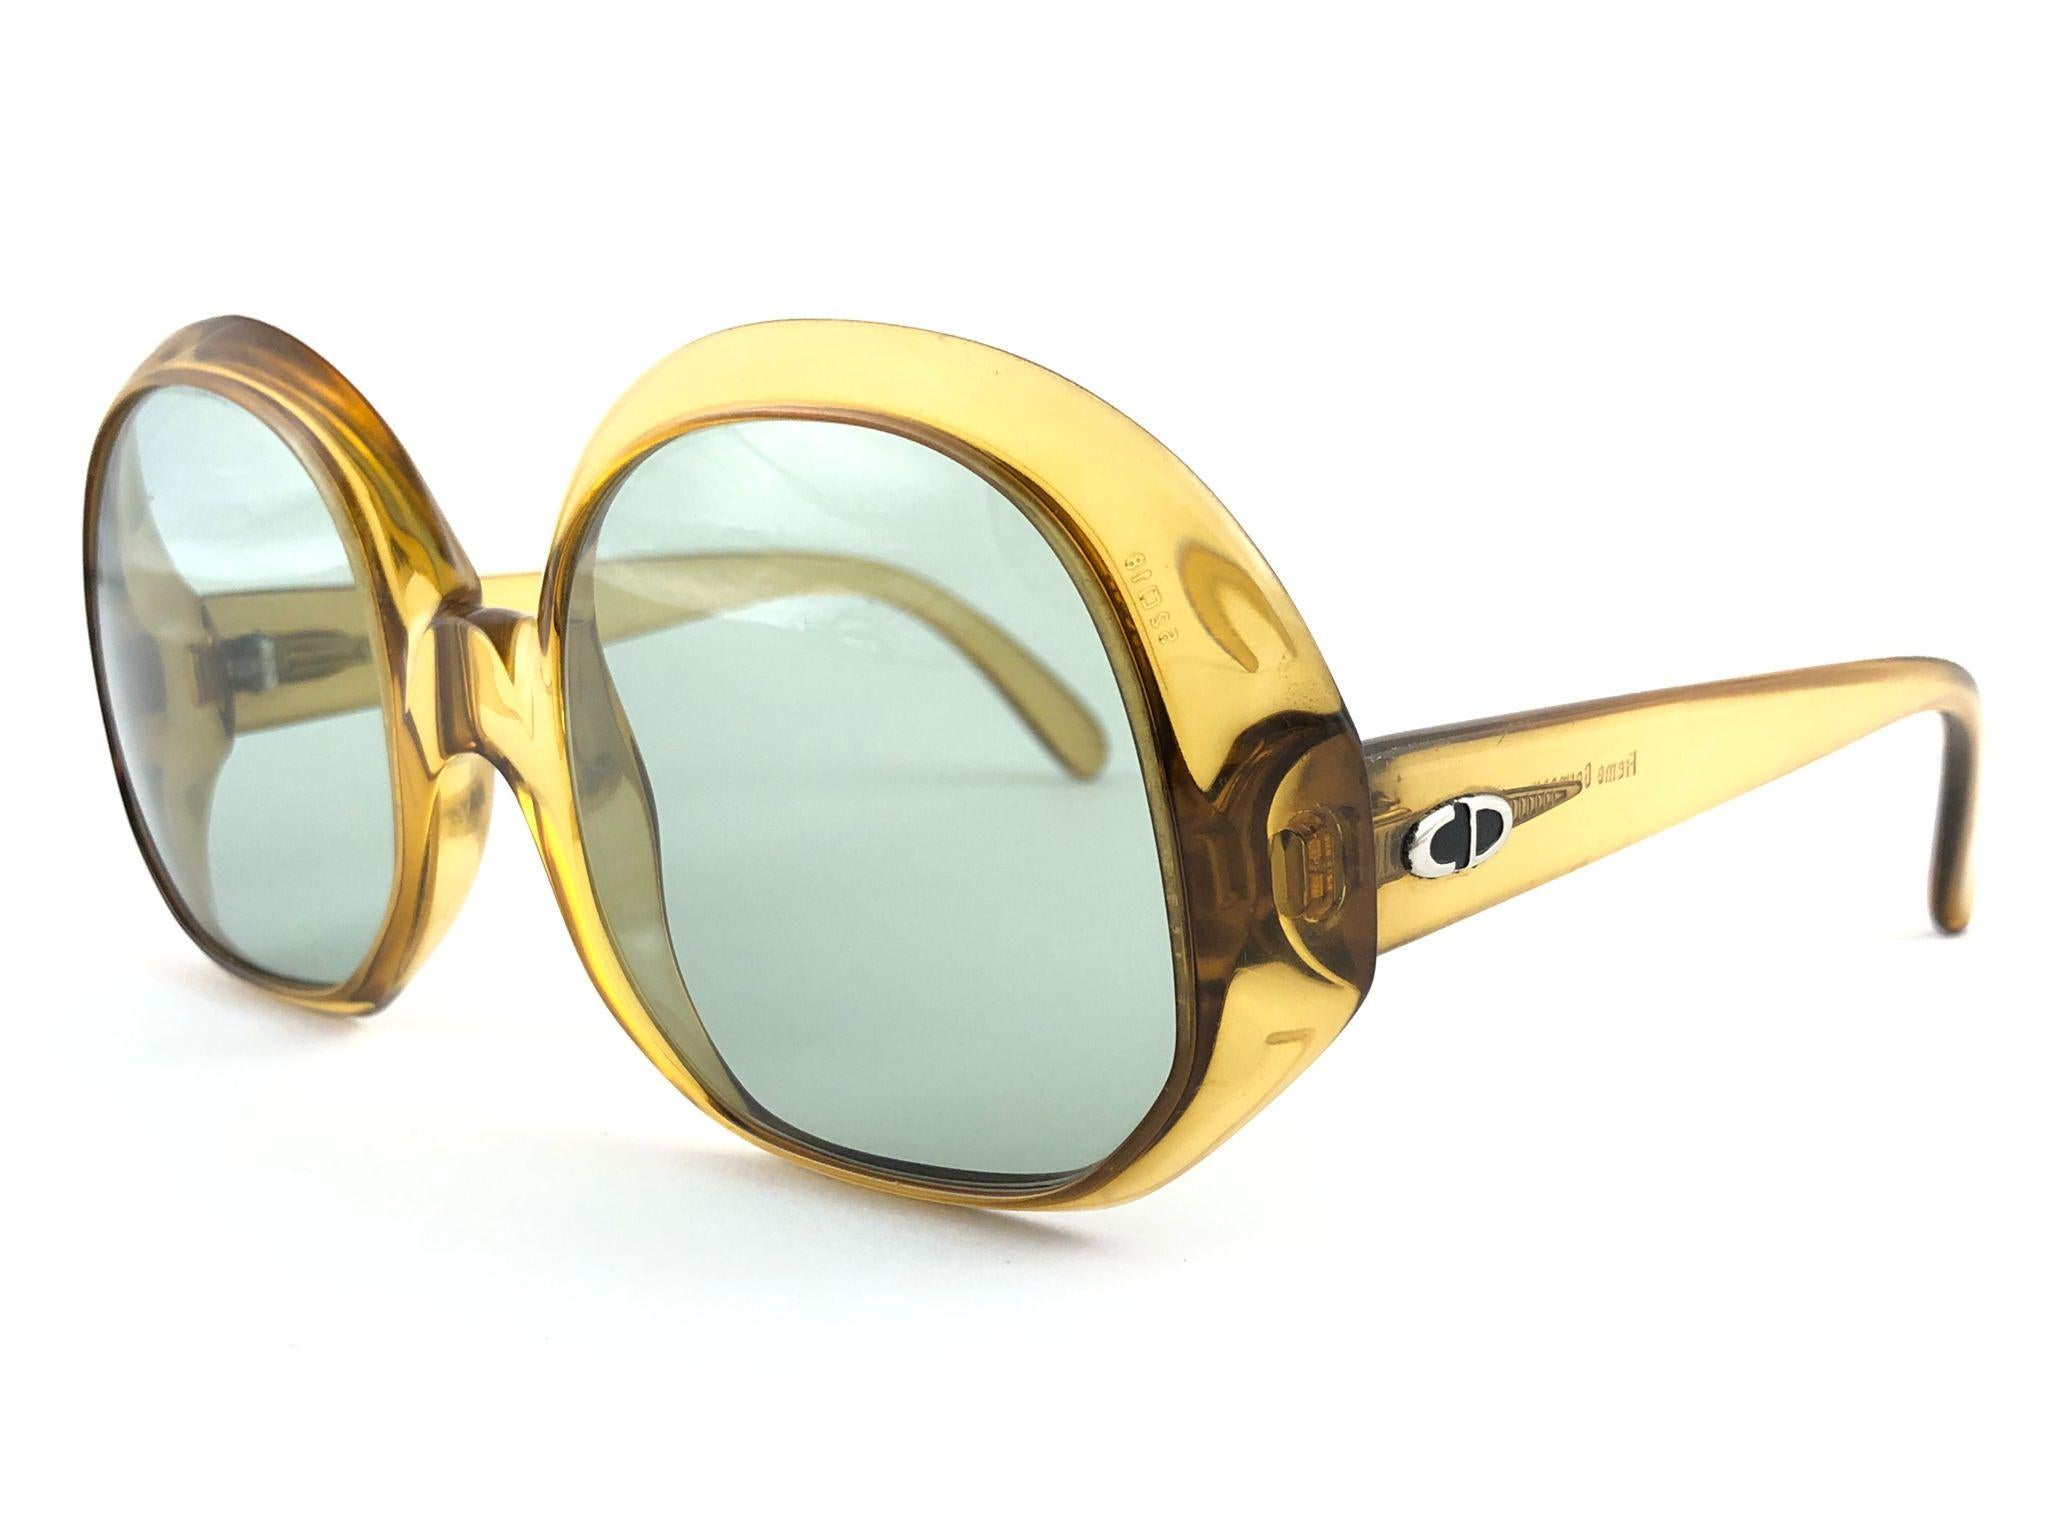 Mint vintage Christian Dior Bernstein durchscheinend Sonnenbrille in Frankreich Mitte der 1960er Jahre gemacht.

Makellose braune Linsen.

Dieses Element zeigen leichte Anzeichen von Verschleiß auf dem Rahmen. Bitte studieren Sie die Bilder vor dem